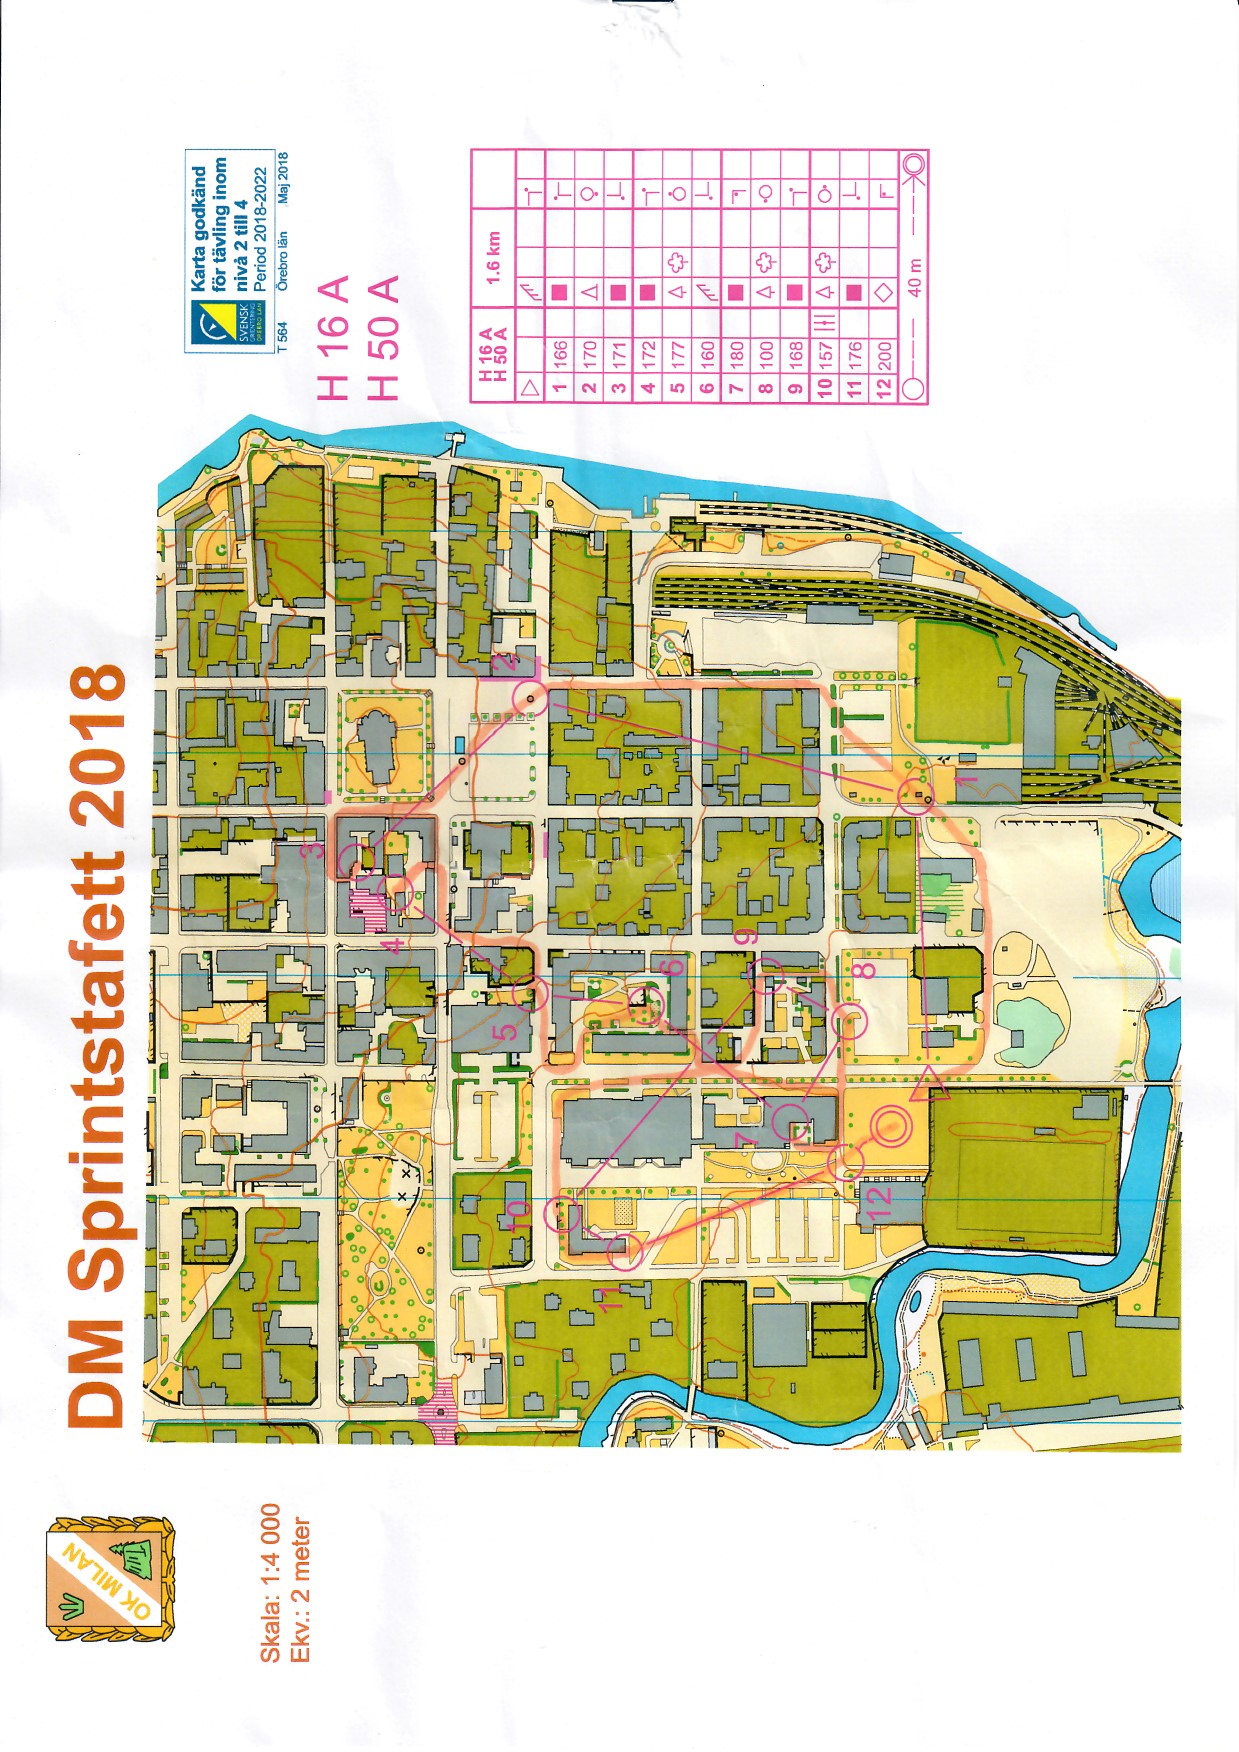 DM Sprintstafett, Örebro (2018-06-10)